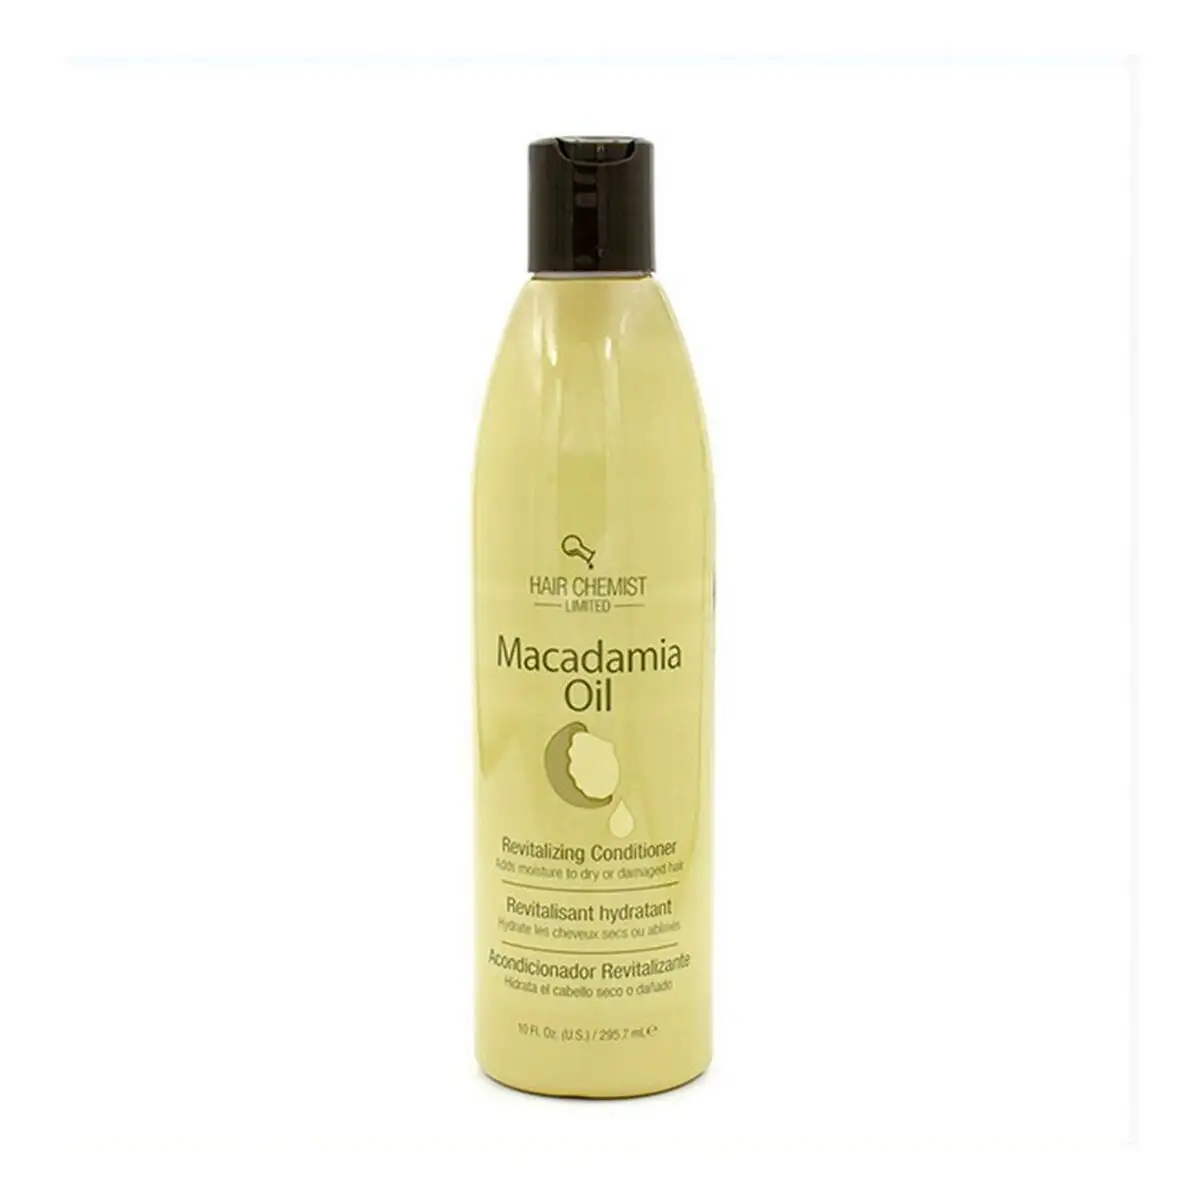 Apres shampooing macadamia oil revitalizing hair chemist 295 ml _5438. DIAYTAR SENEGAL - Votre Portail Vers l'Exclusivité. Explorez notre boutique en ligne pour découvrir des produits uniques et raffinés, conçus pour ceux qui recherchent l'excellence.